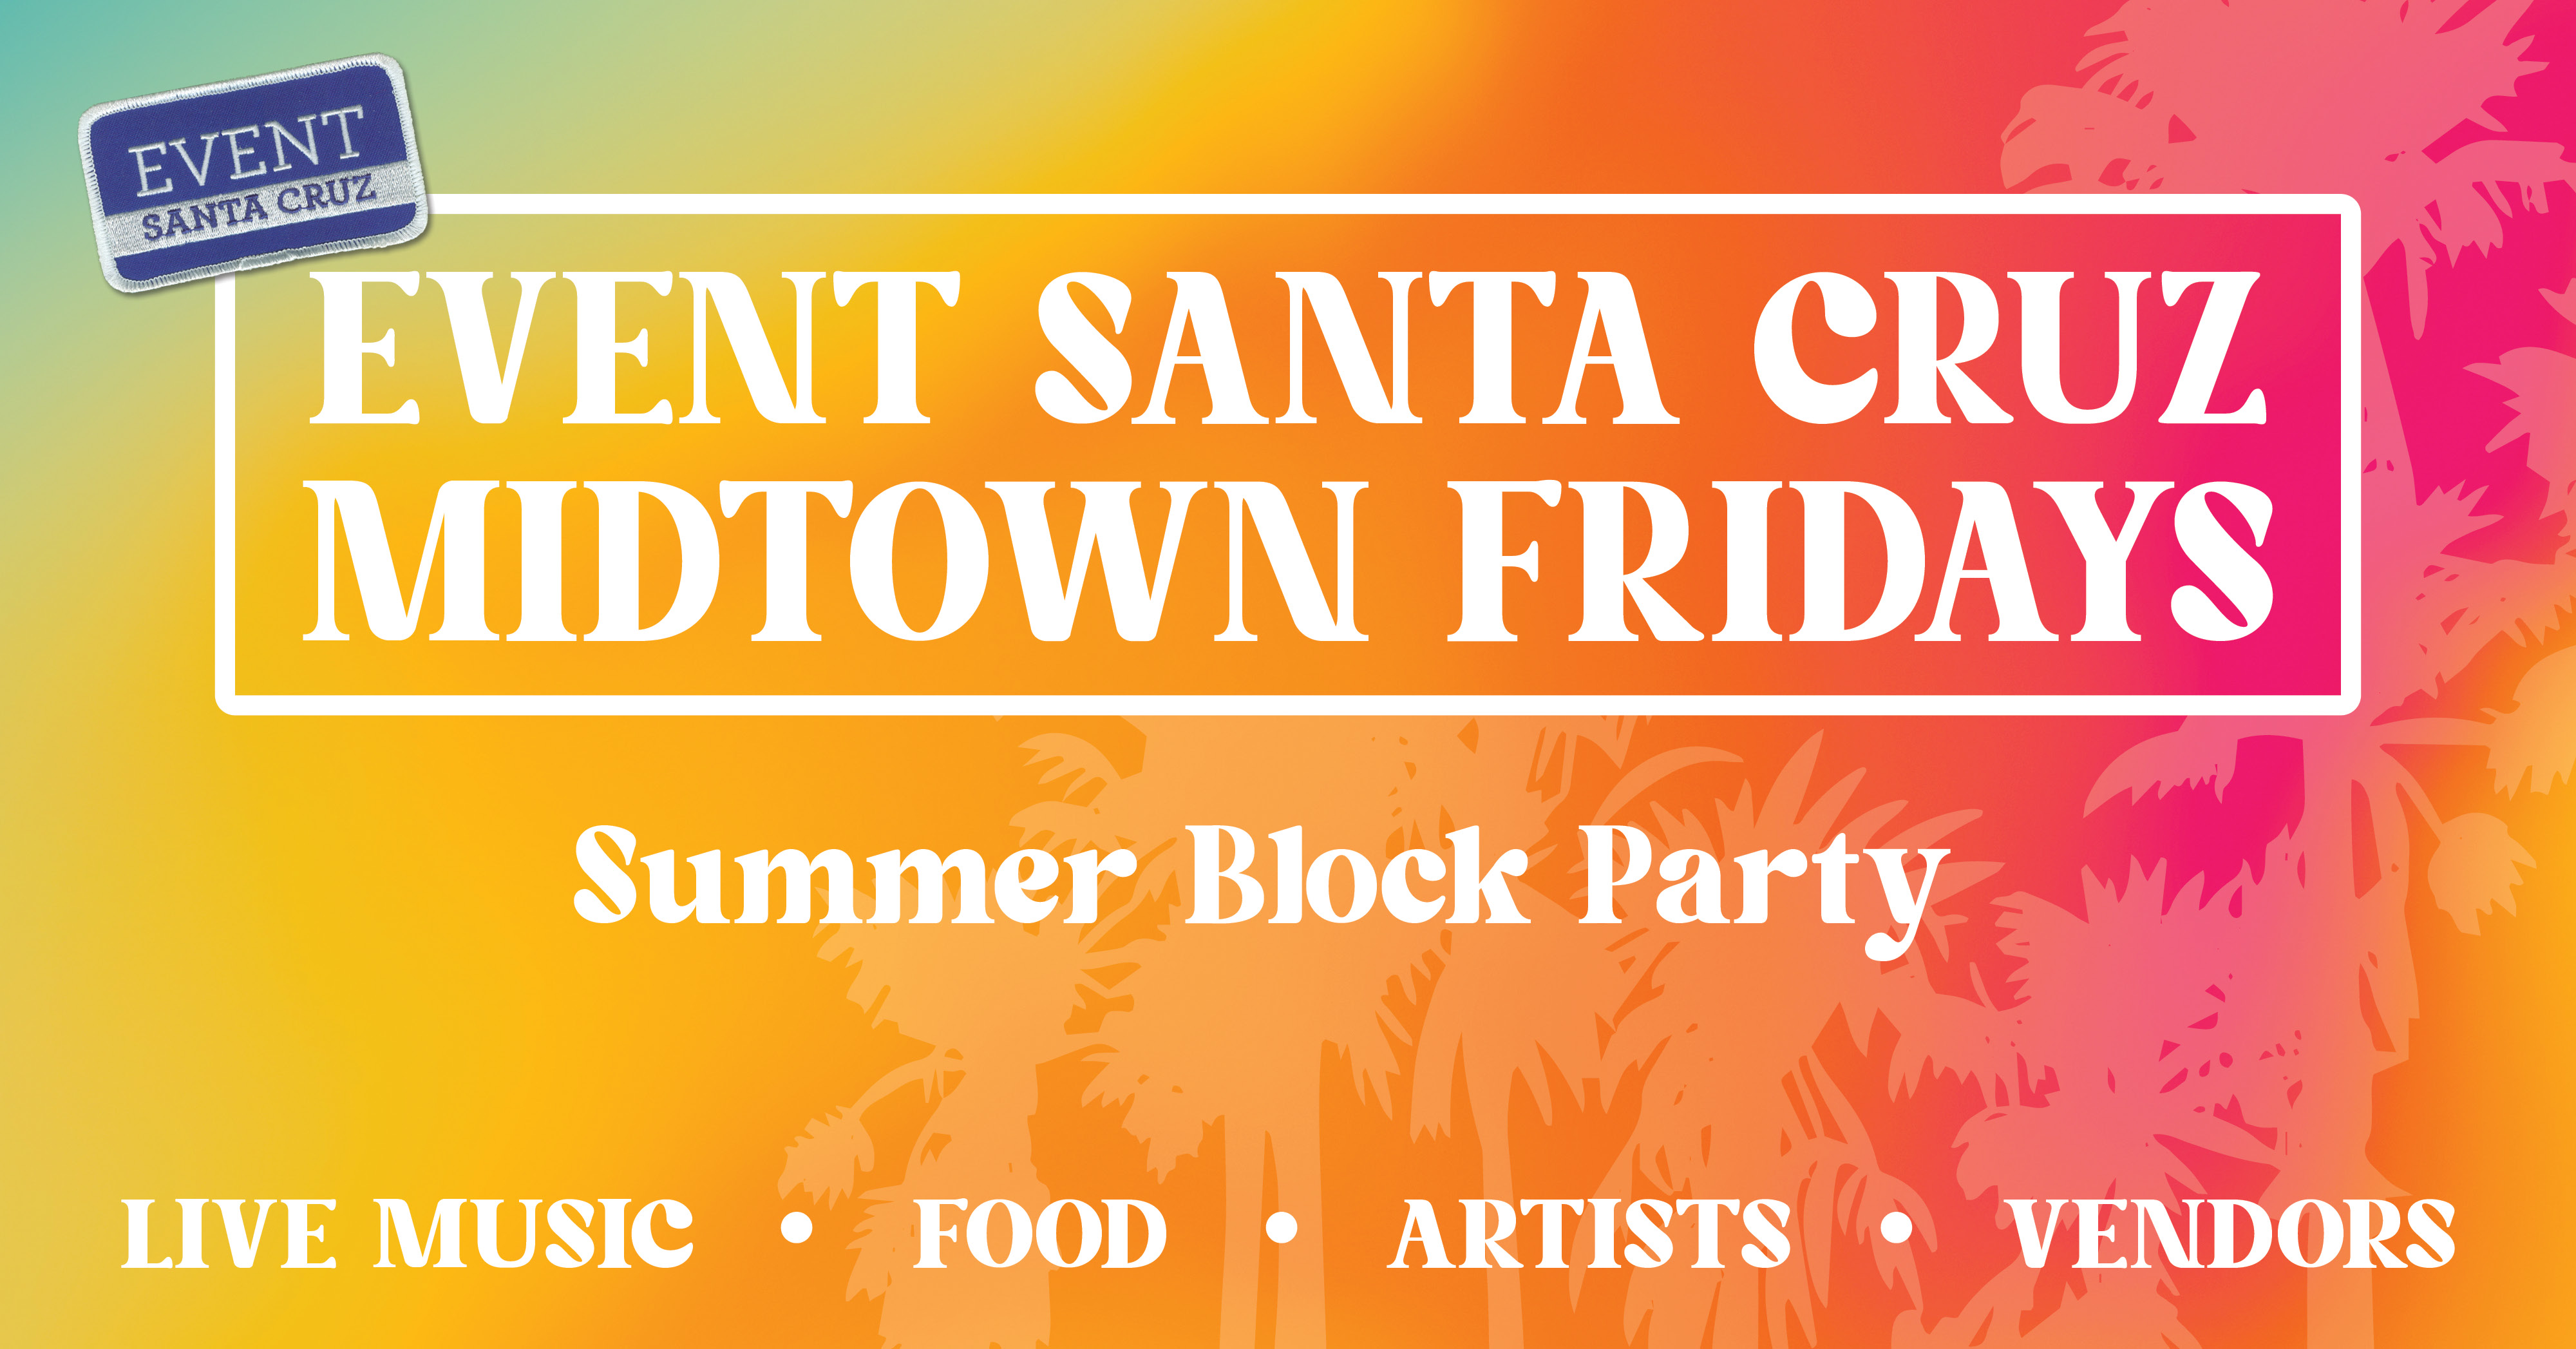 Event Santa Cruz Midtown Fridays